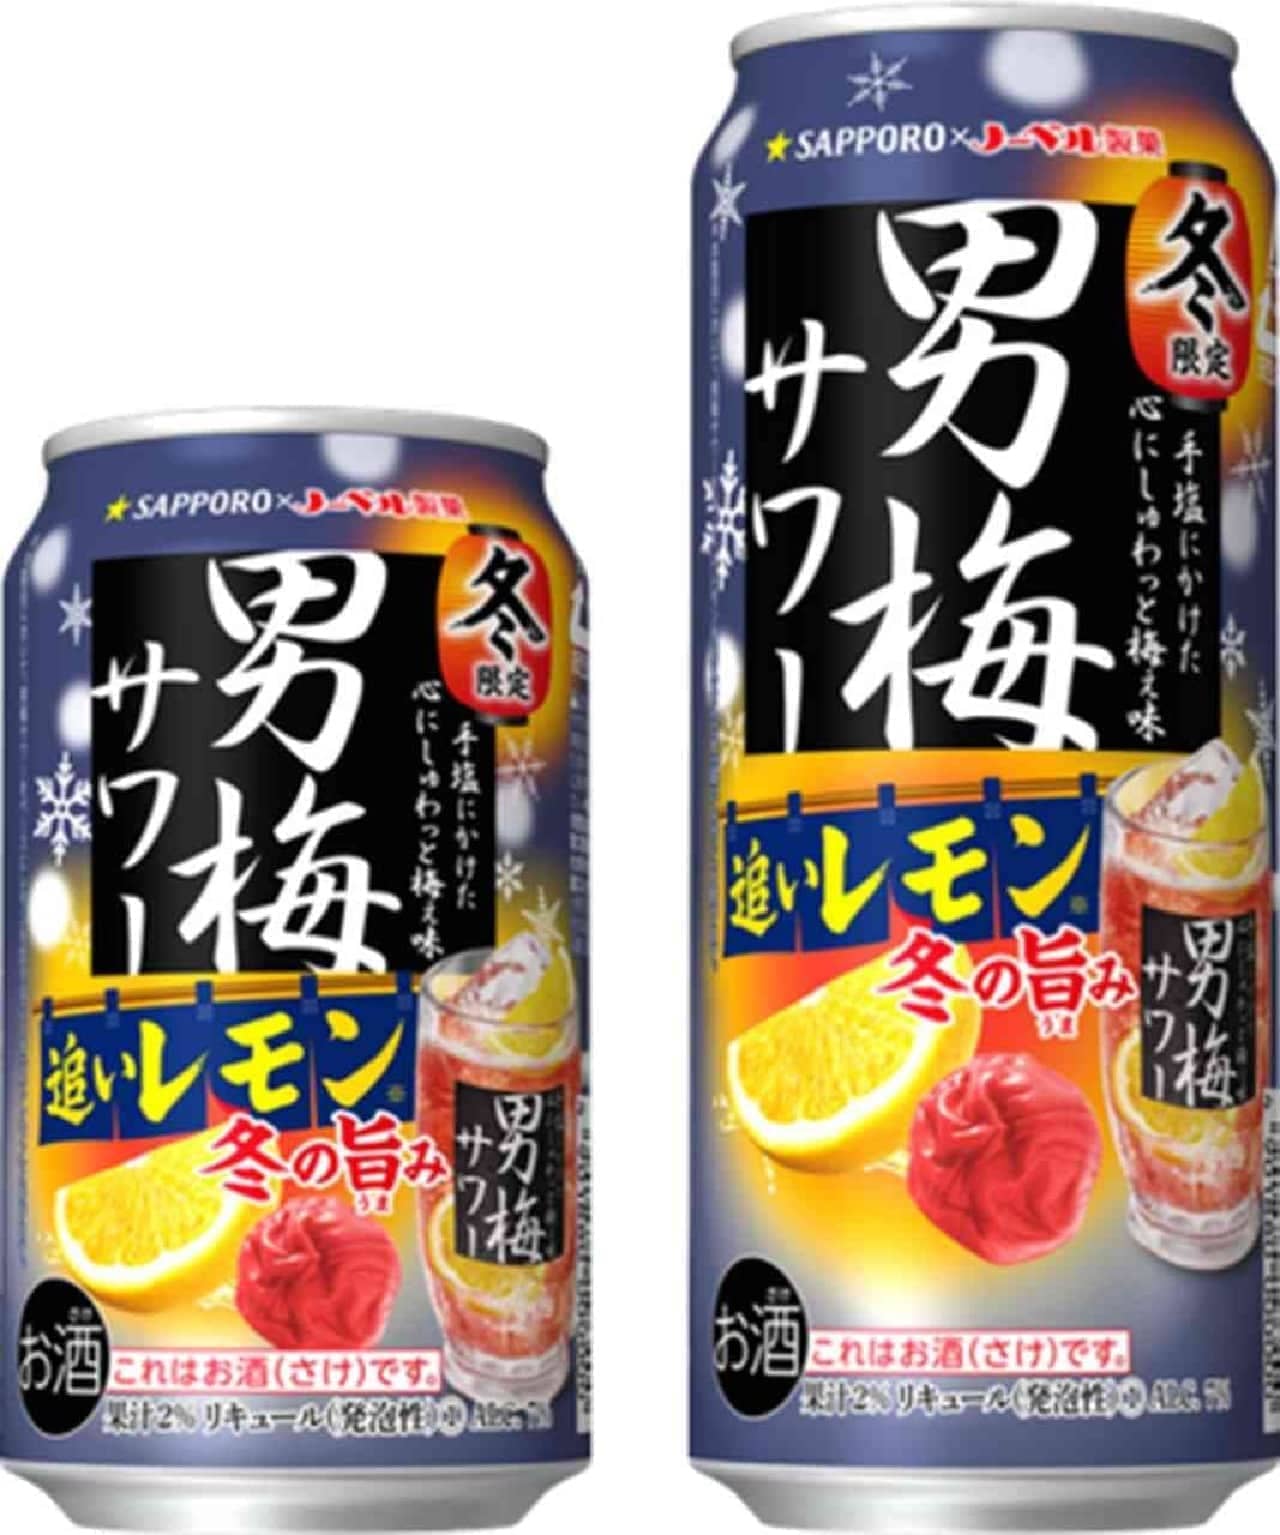 Sapporo Otoko Ume Sour Chasing Lemon Winter taste